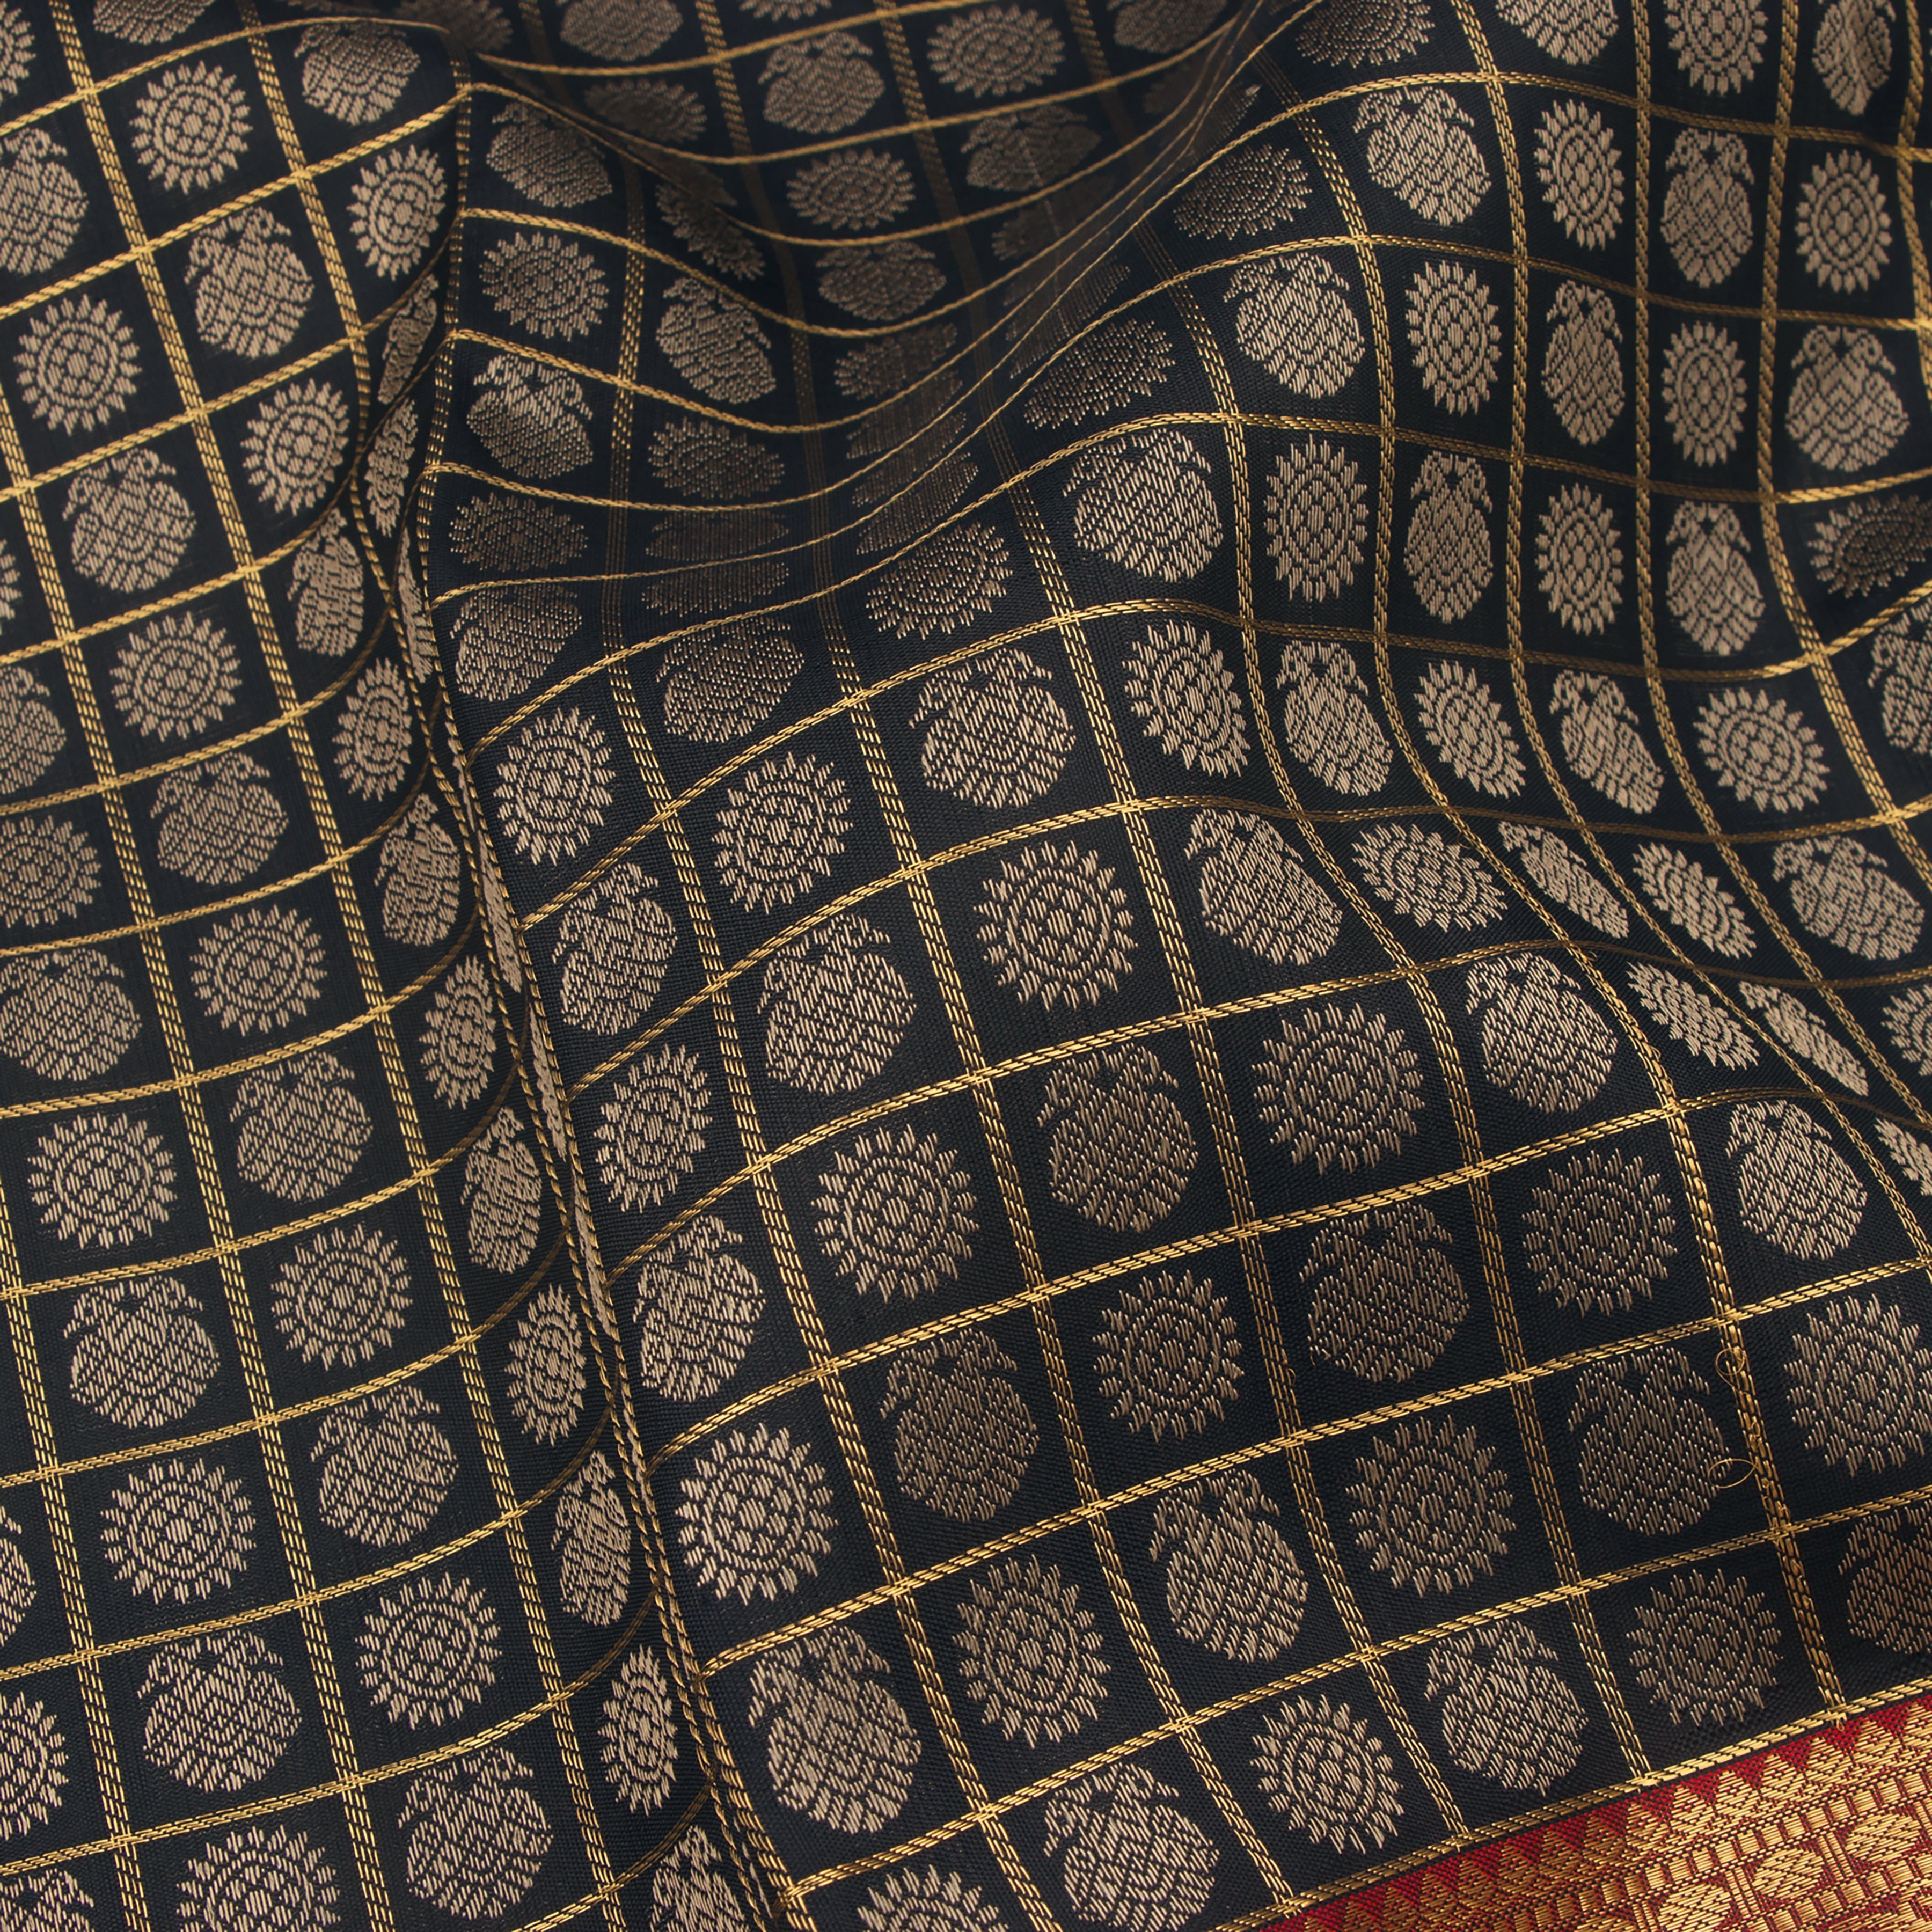 Kanakavalli Kanjivaram Silk Sari 22-110-HS001-12576 - Fabric View